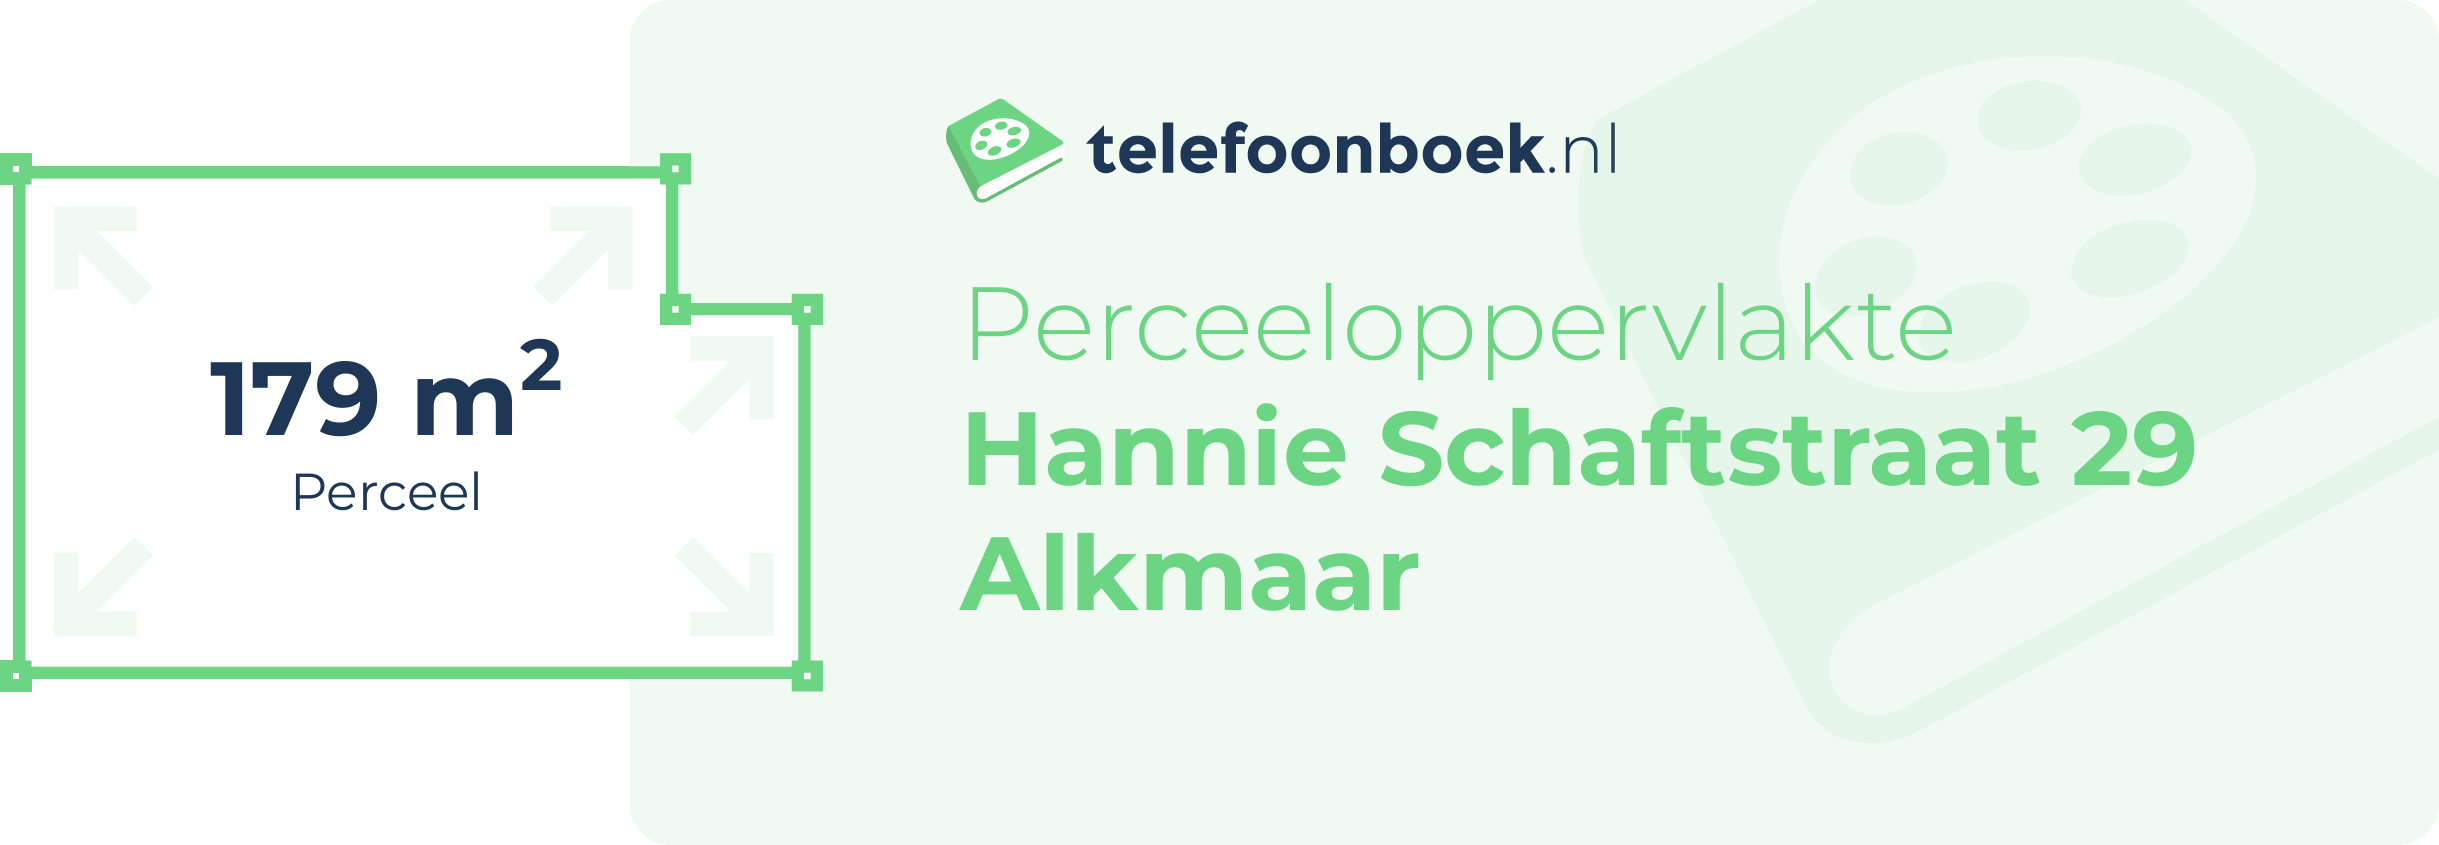 Perceeloppervlakte Hannie Schaftstraat 29 Alkmaar